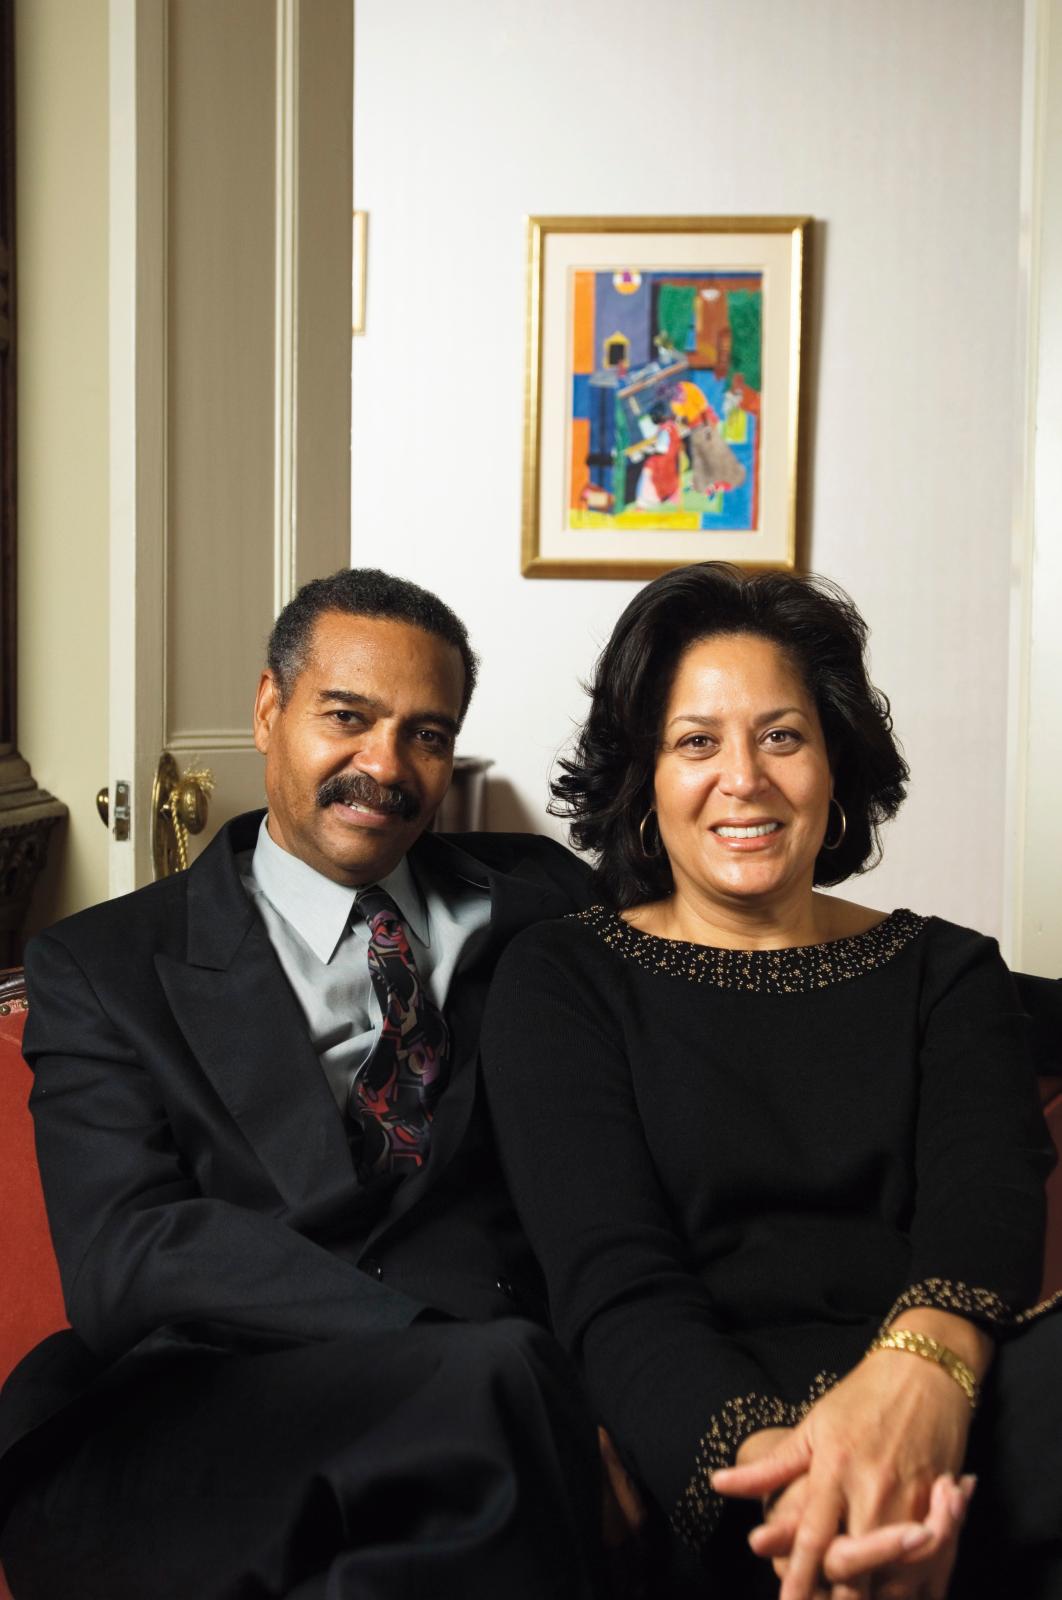 Walter et Linda Evans, collectionneurs d'art afro-américain